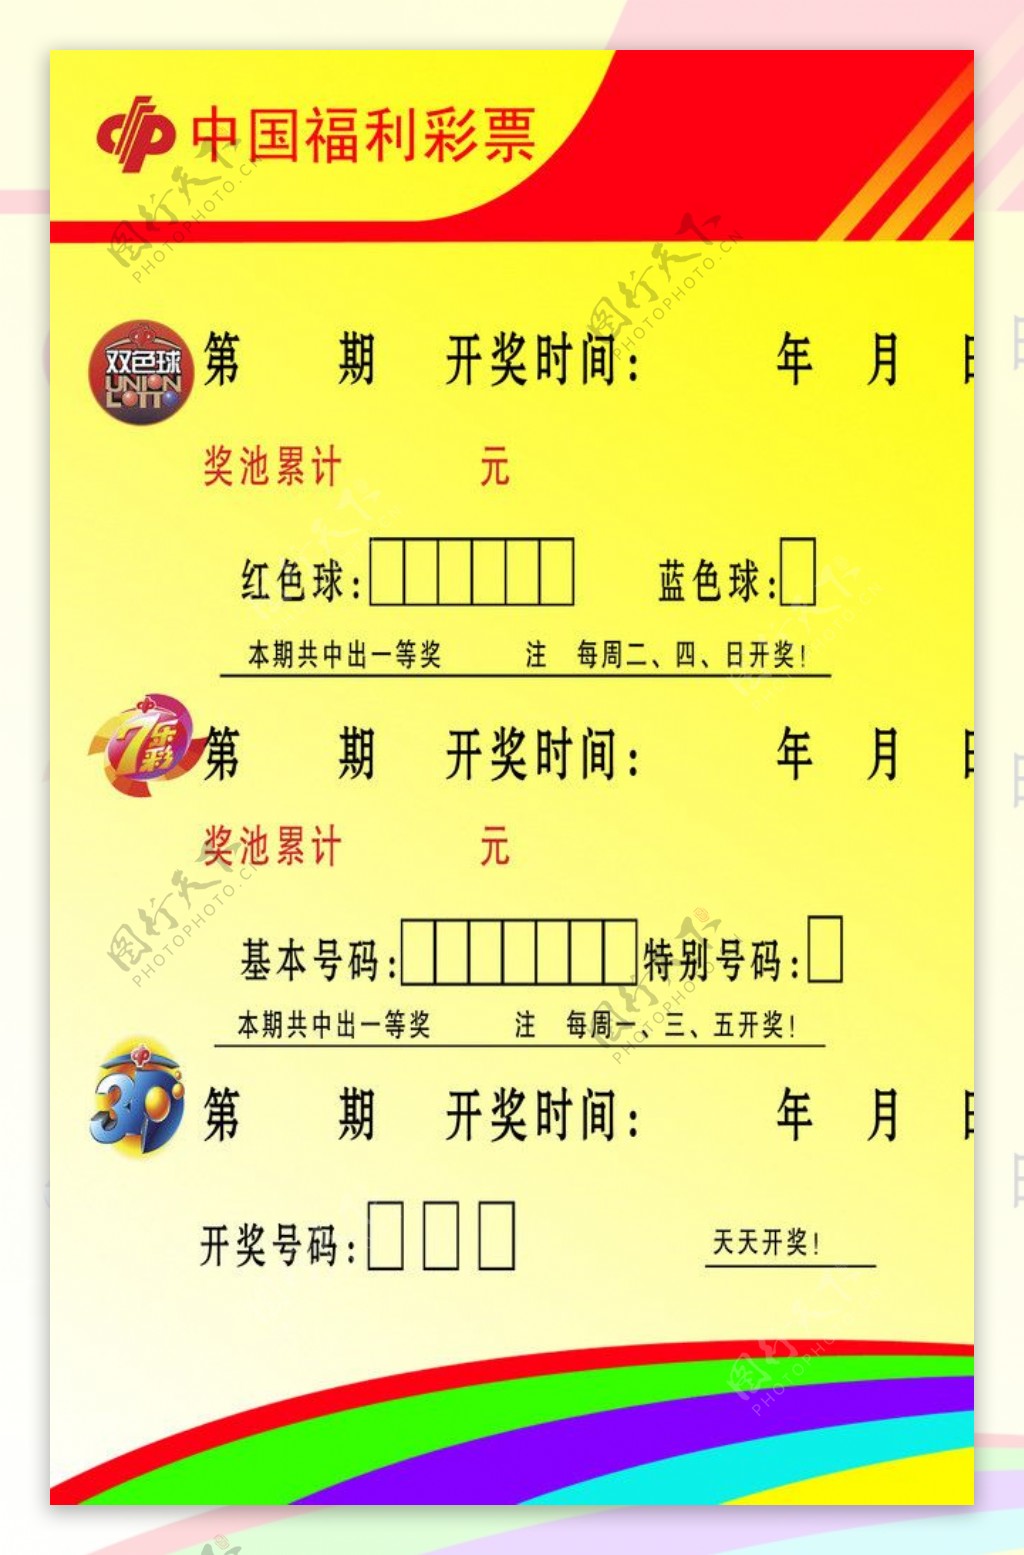 中国福利彩票模版图片